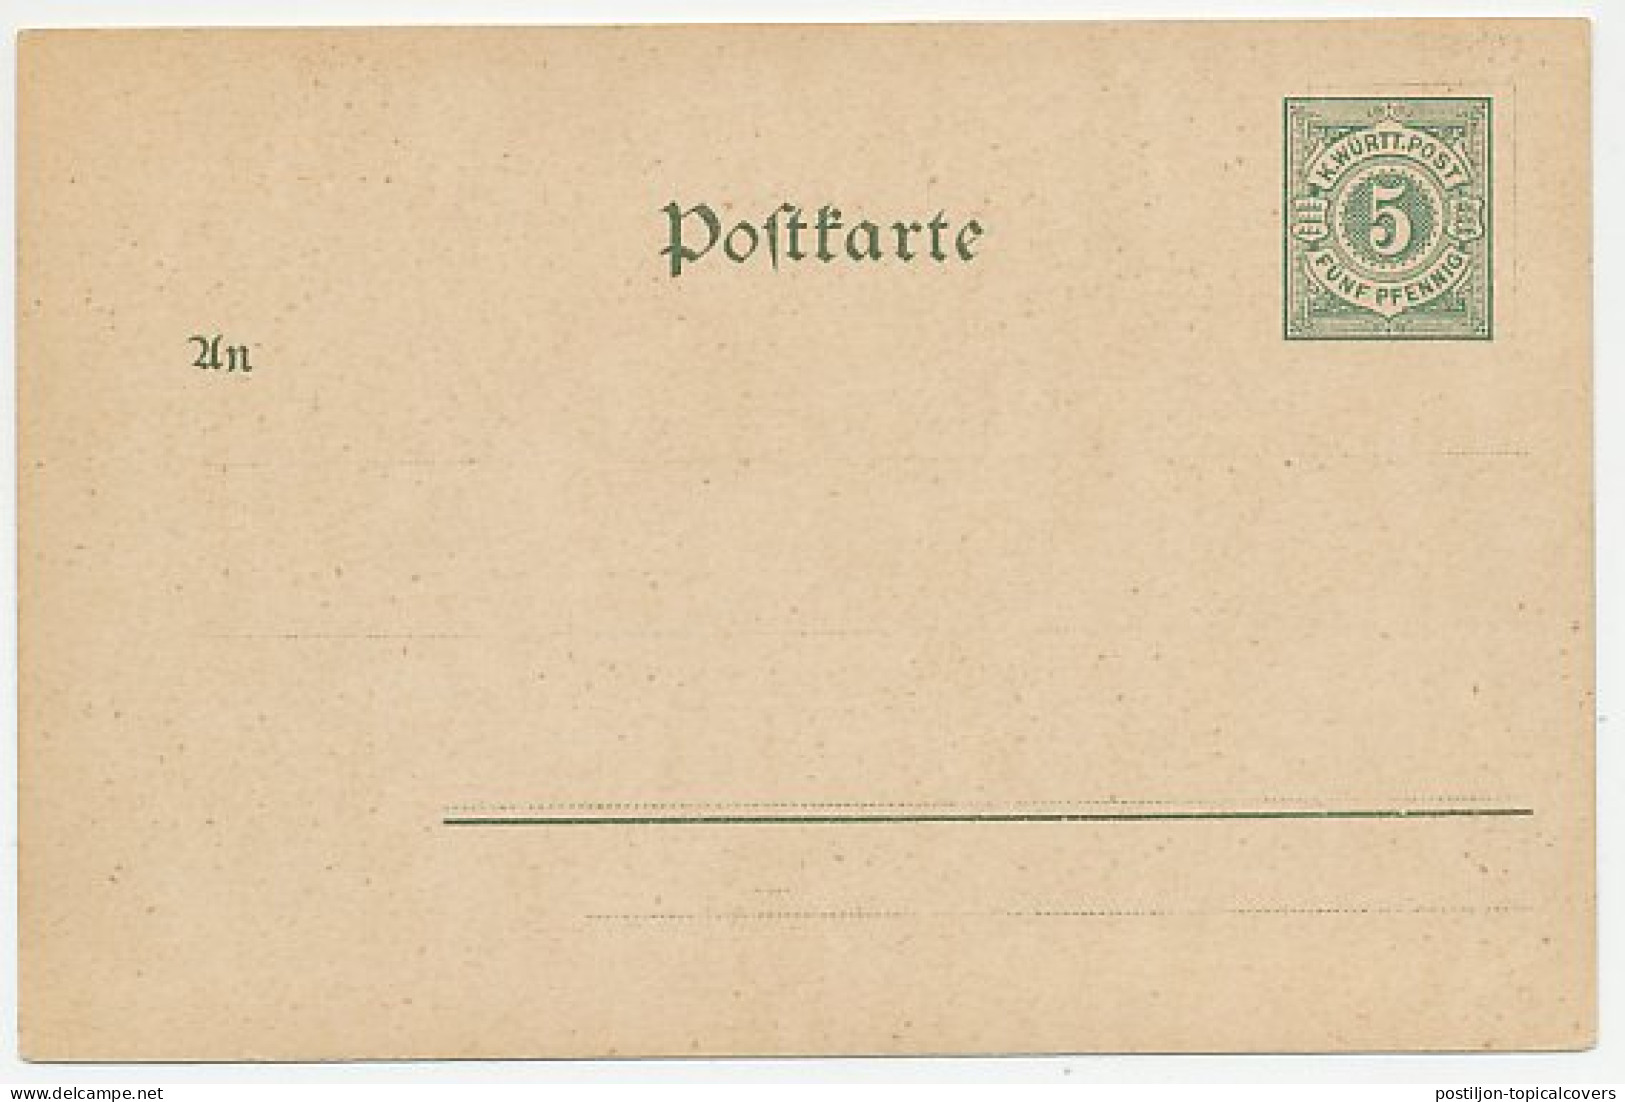 Postal Stationery Wurttemberg Hylas - Karl Olga - Eberhard - Mythology